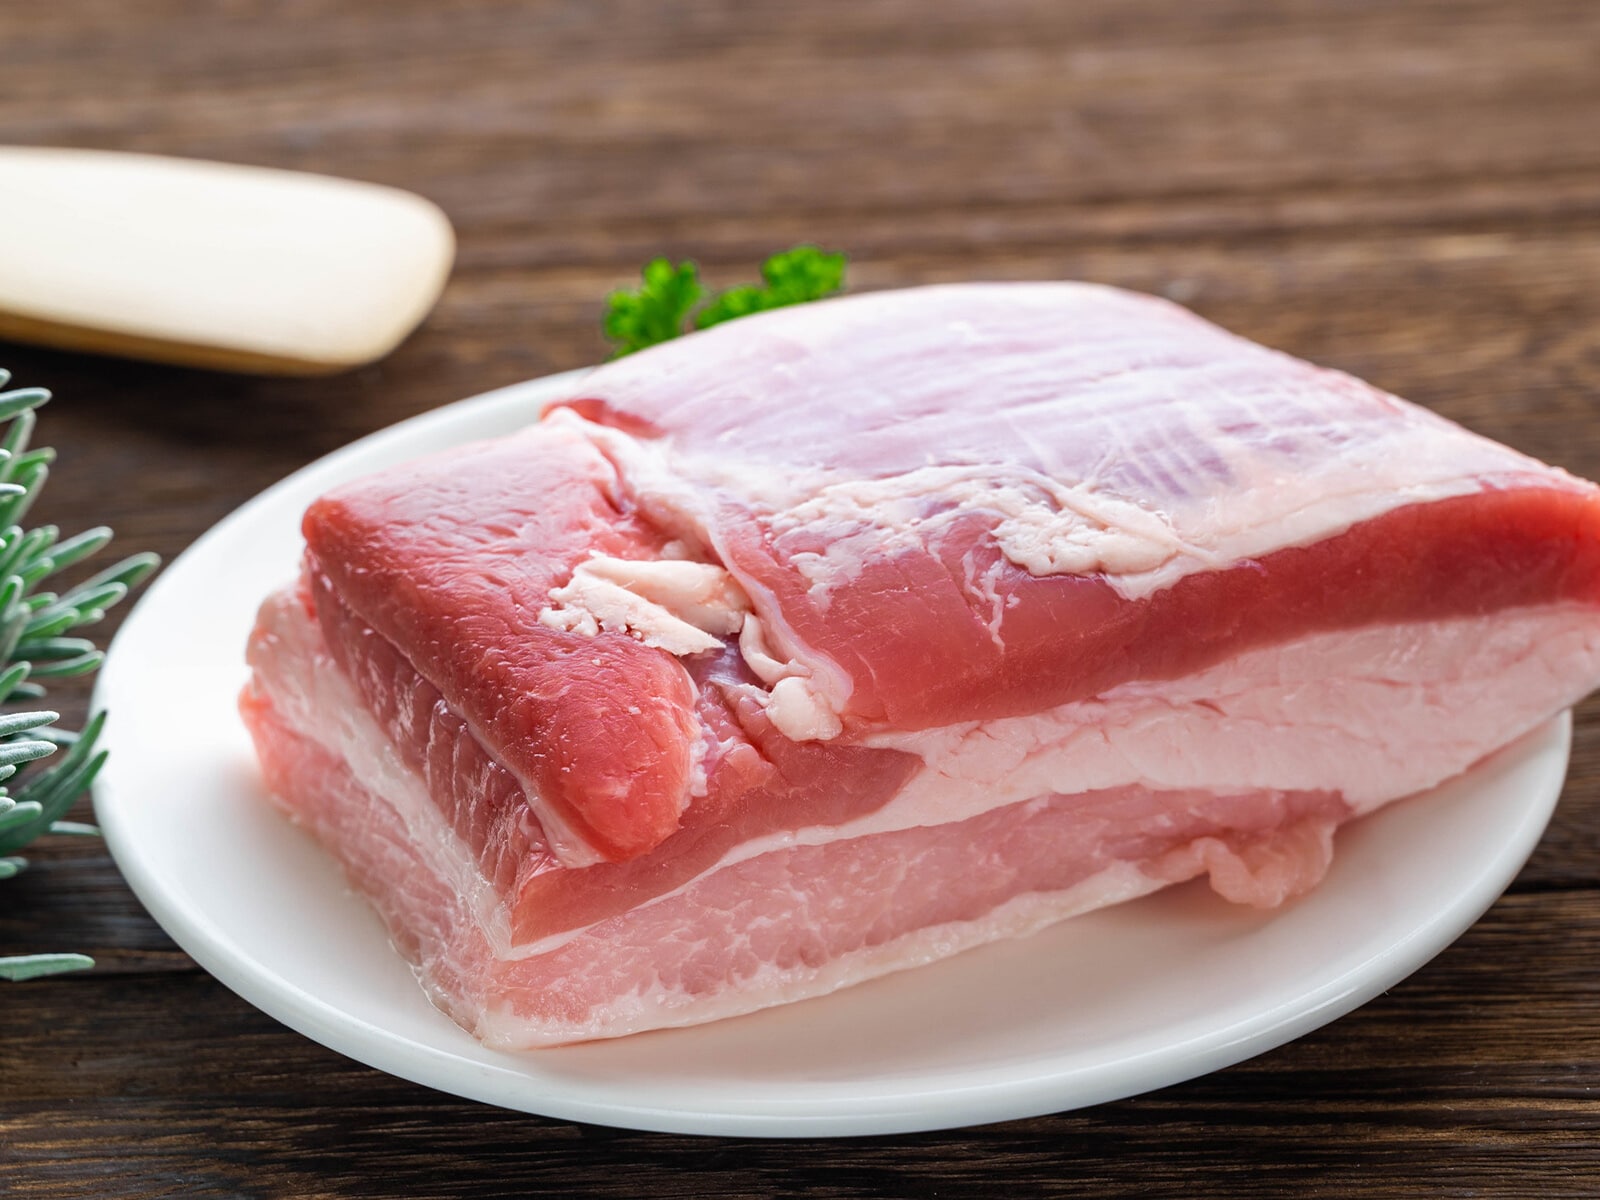 「豚肉がおいしい」と思う都道府県ランキング